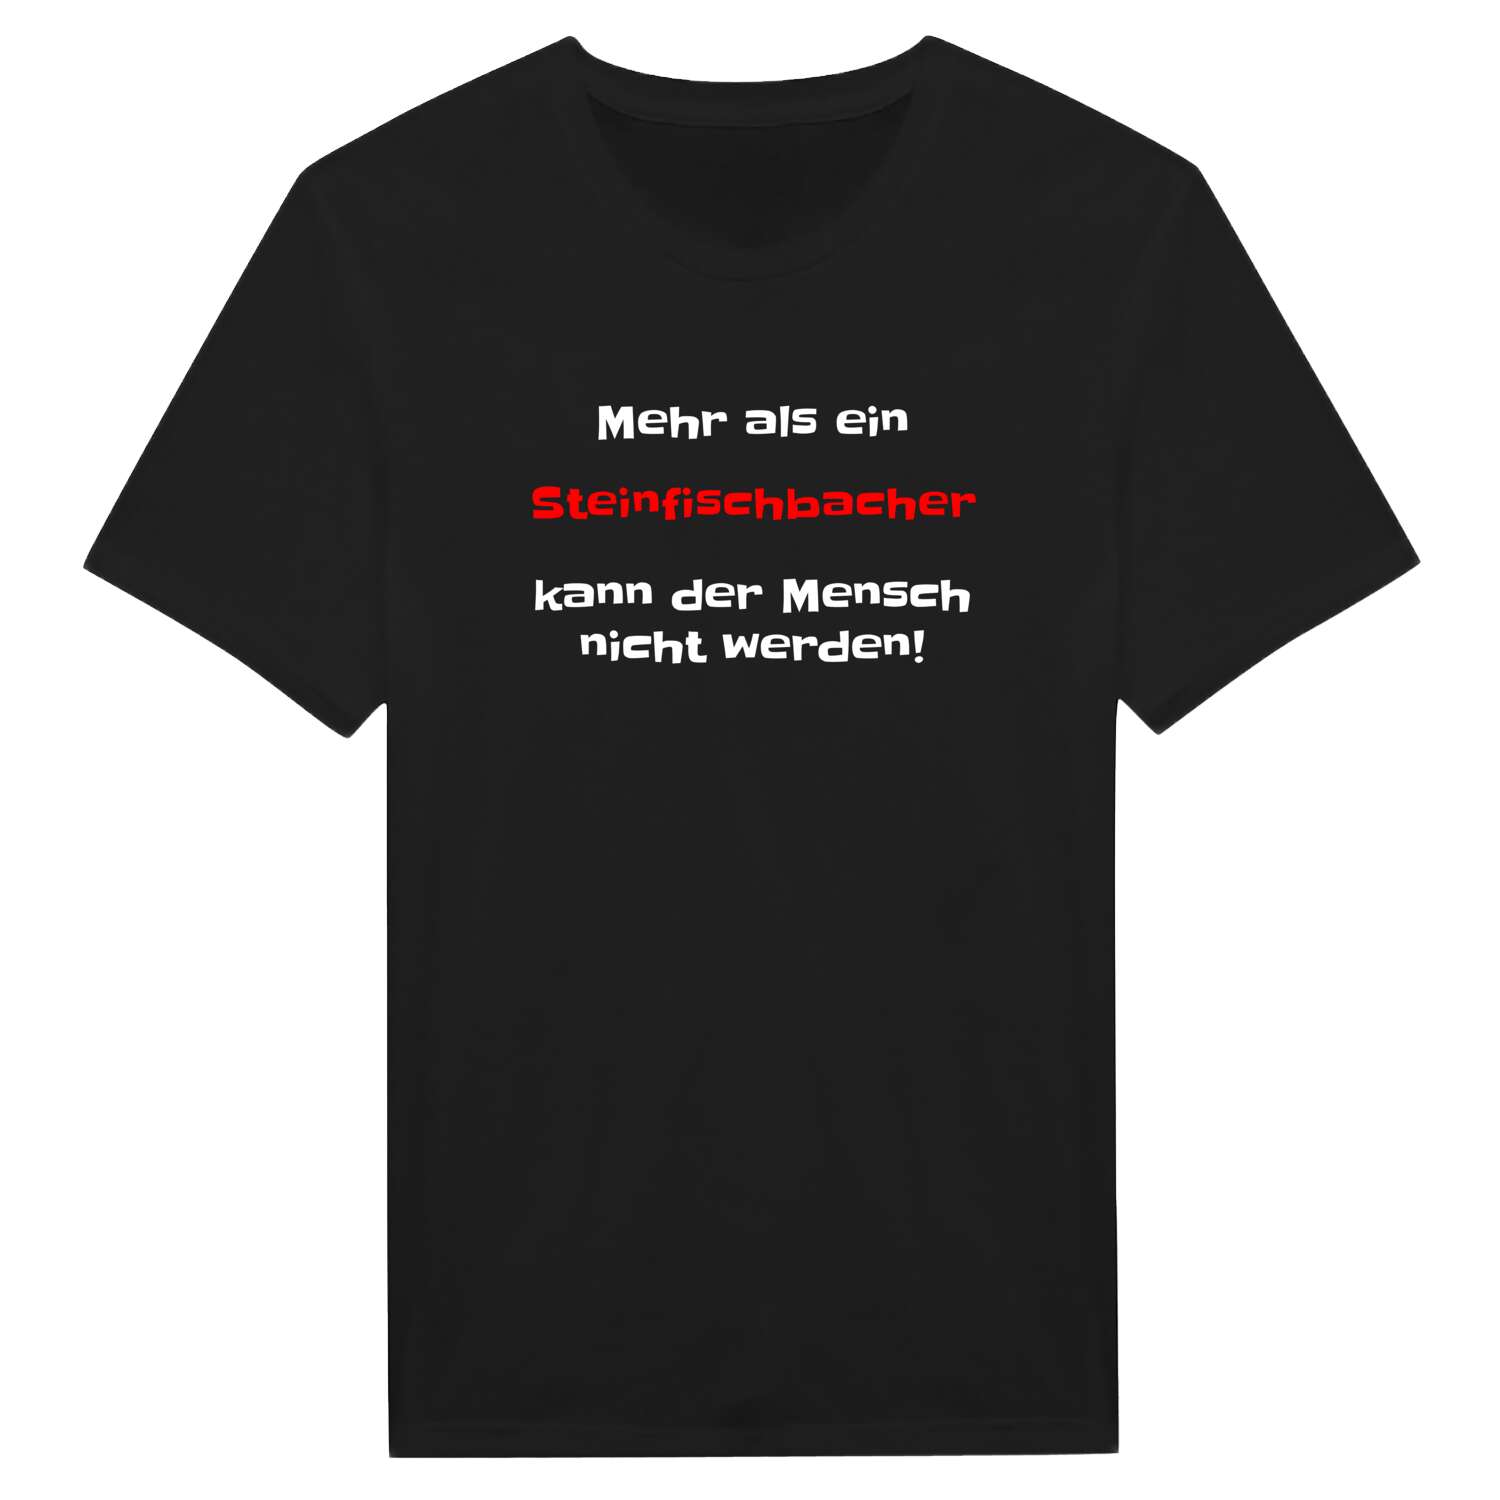 Steinfischbach T-Shirt »Mehr als ein«